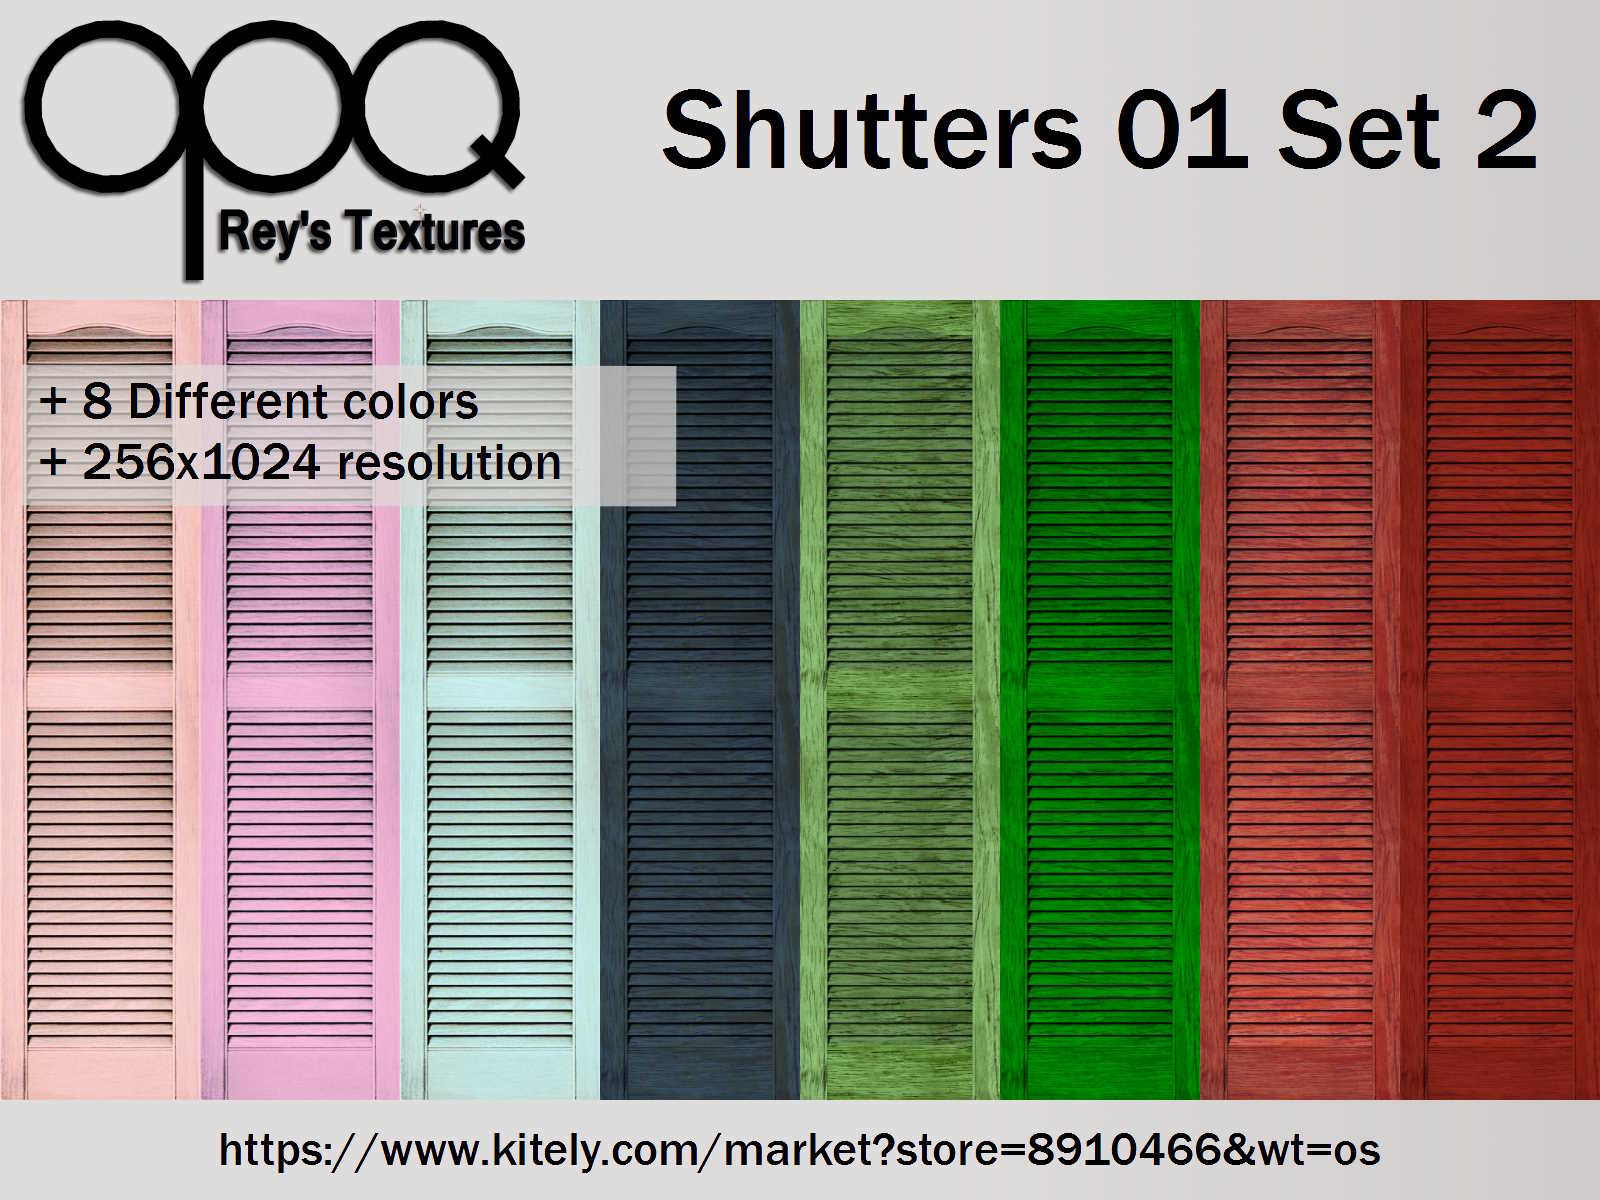 Rey's Shutters 01 Set 2 Poster Kitely.jpg